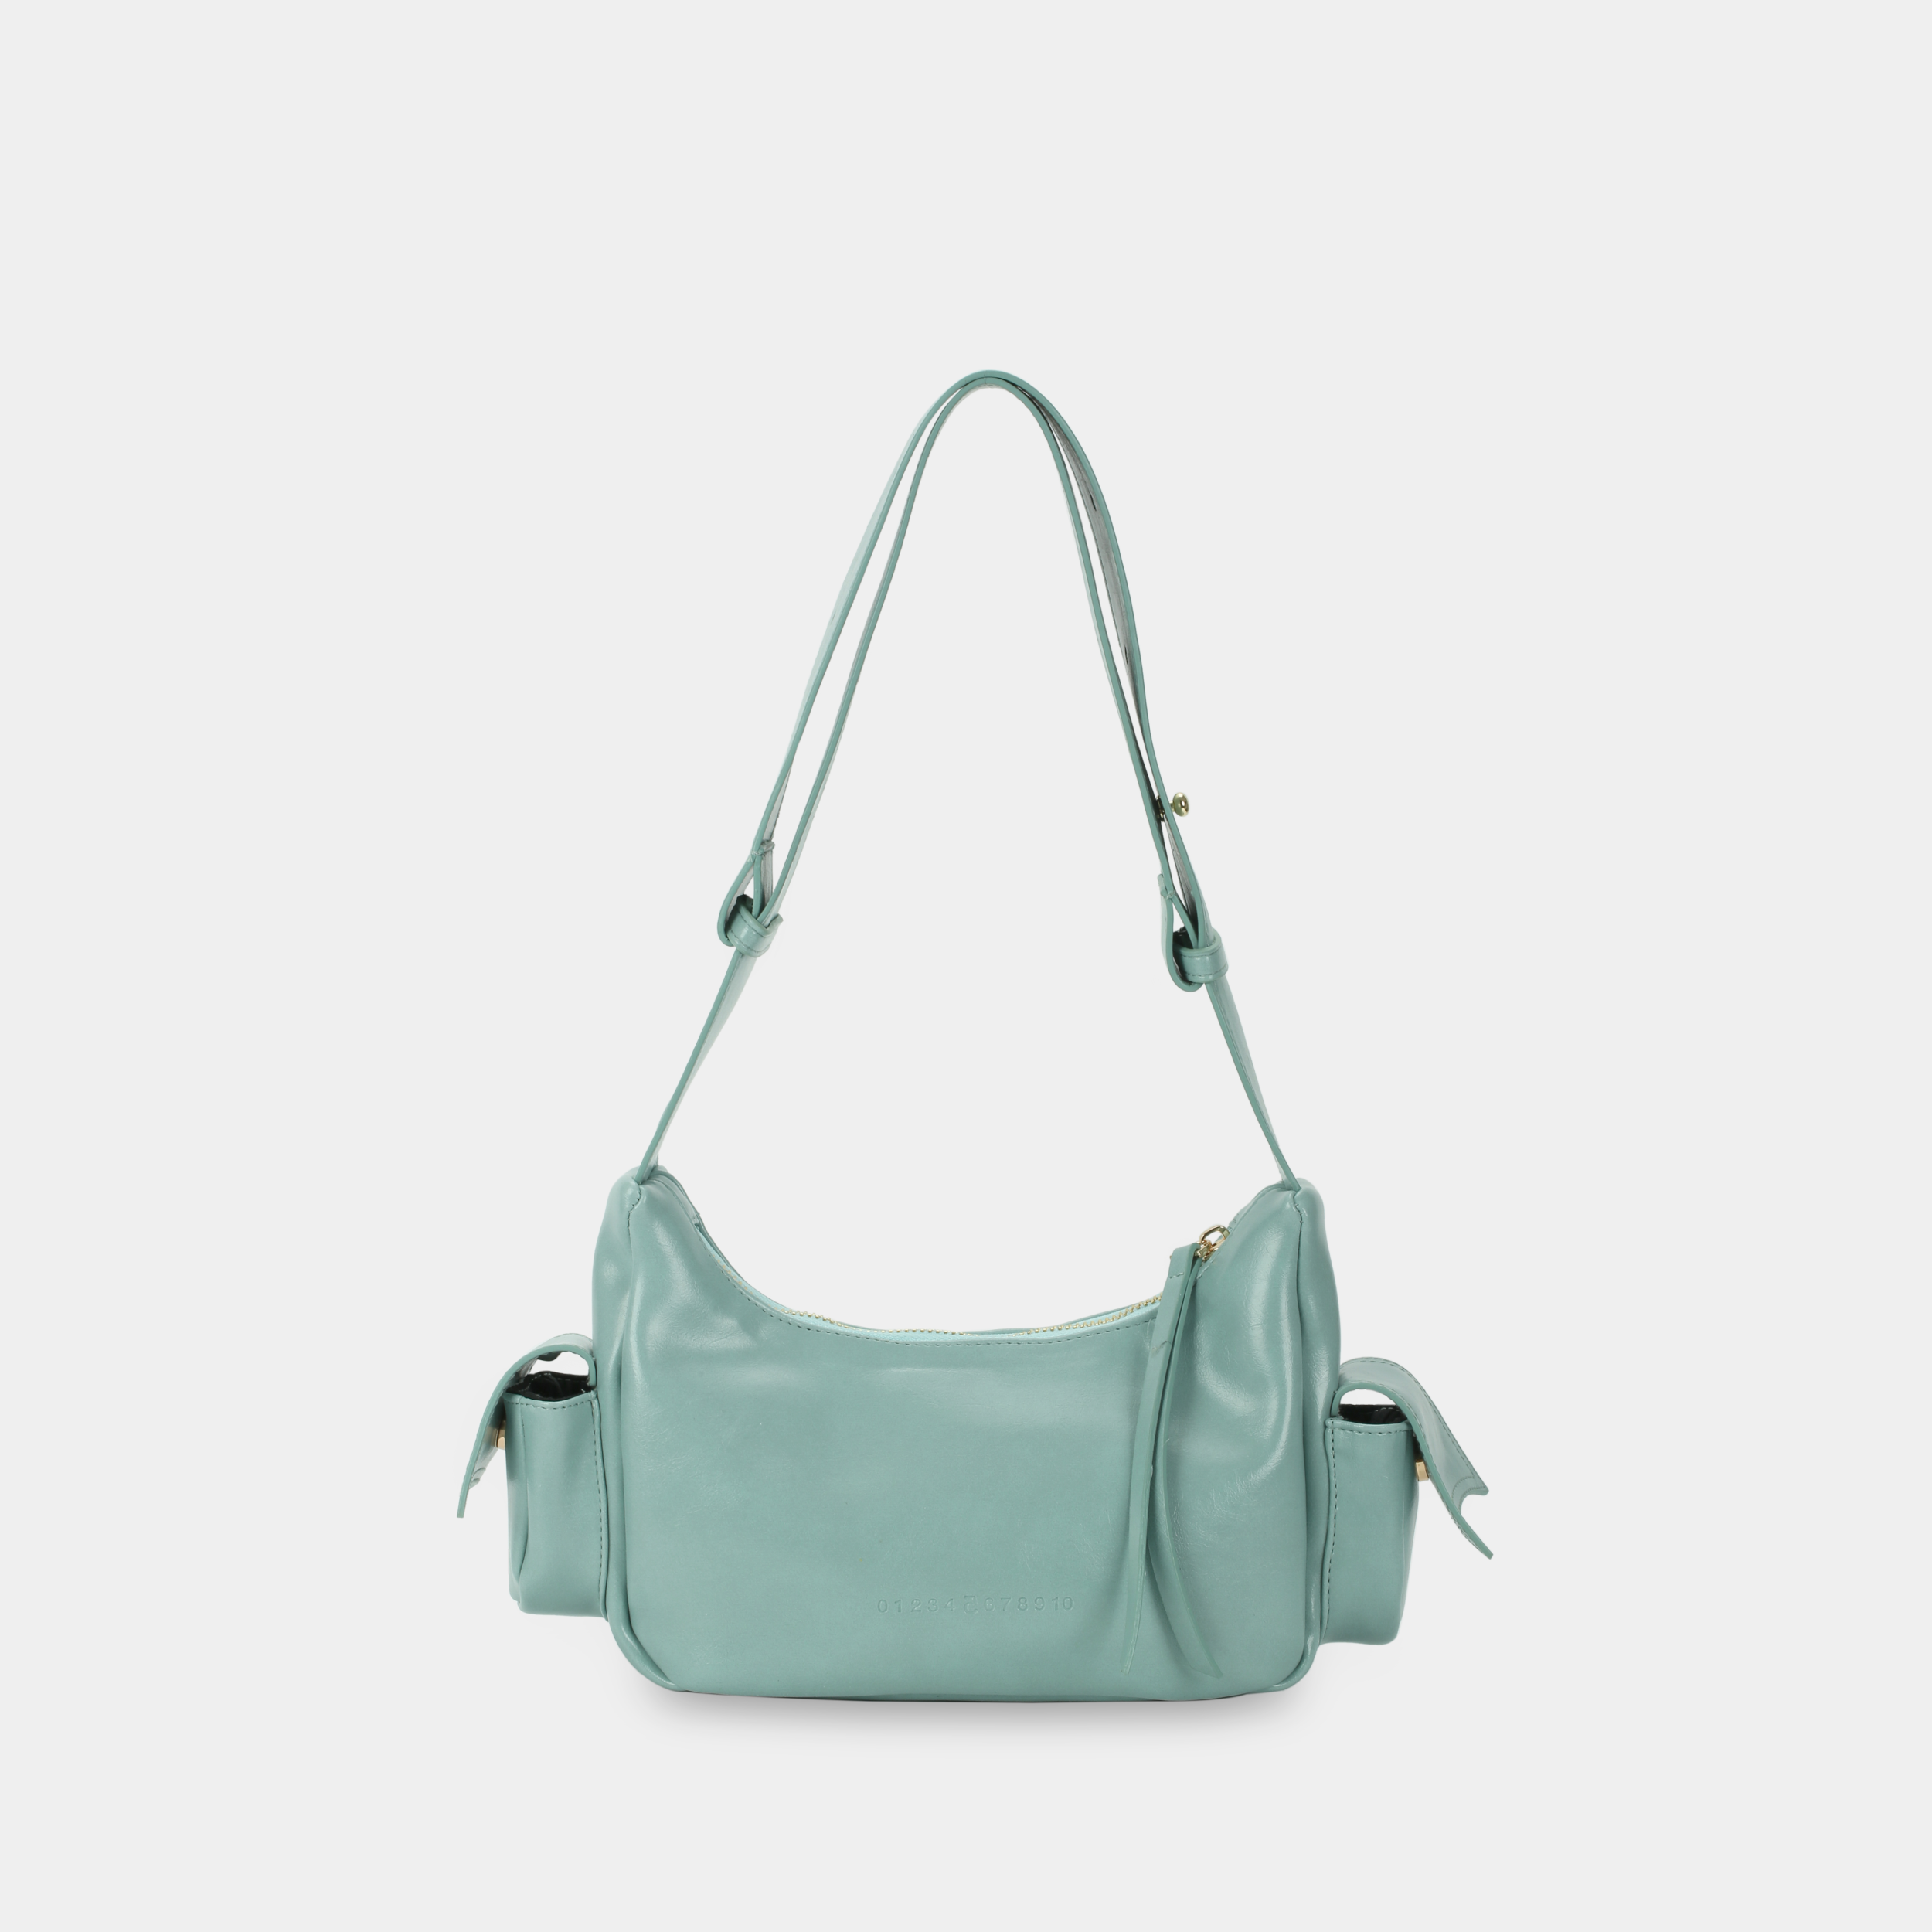 Túi xách C5-Pocket size nhỏ (S) màu xanh ngọc pastel